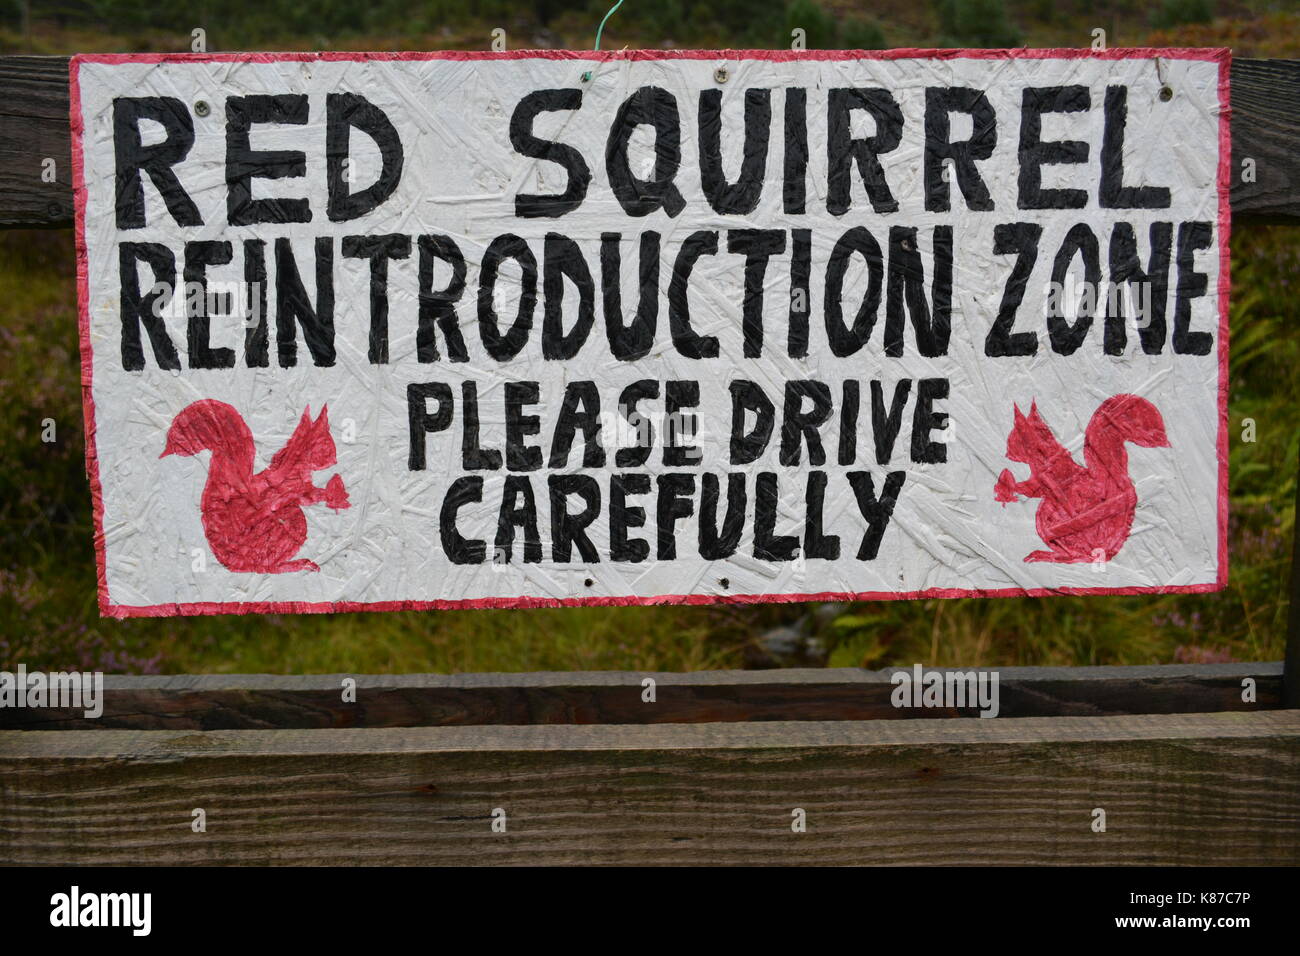 Hand Made Zeichen für Eichhörnchen Wiedereinführung Zone fahren Sie bitte sorgfältig Straße in Schottland eine 896 Glenshieldaig Wald Stockfoto